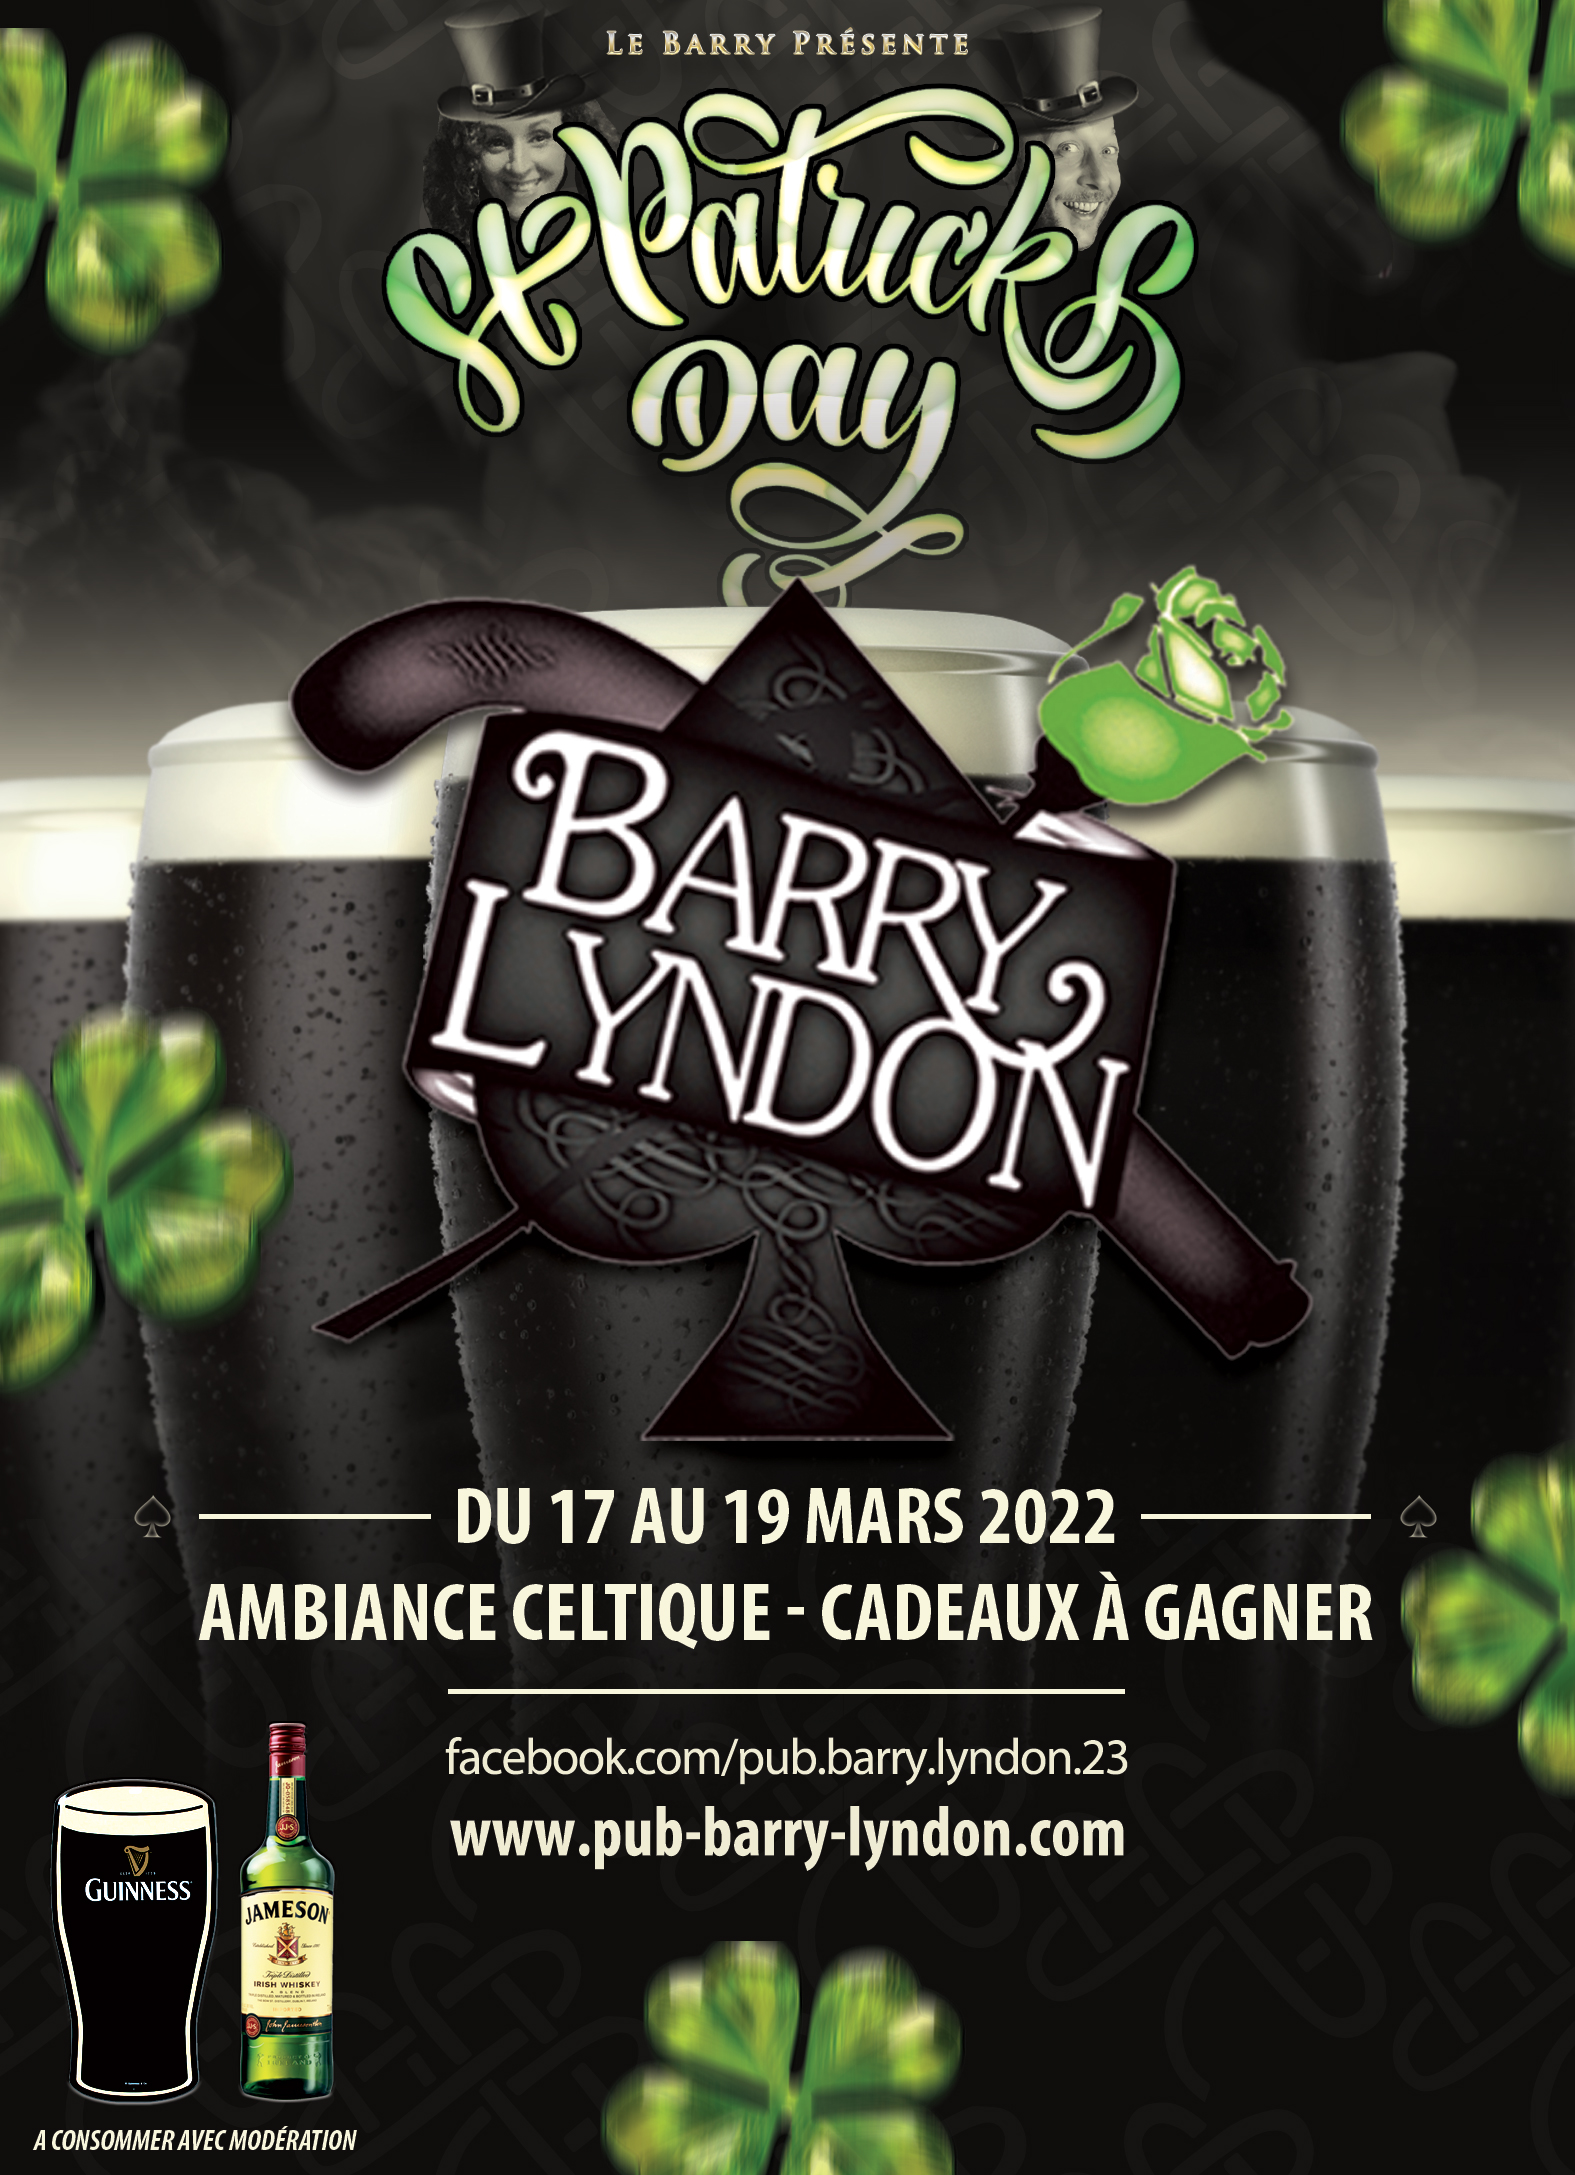 Le Barry présente la Saint Patrick 2022